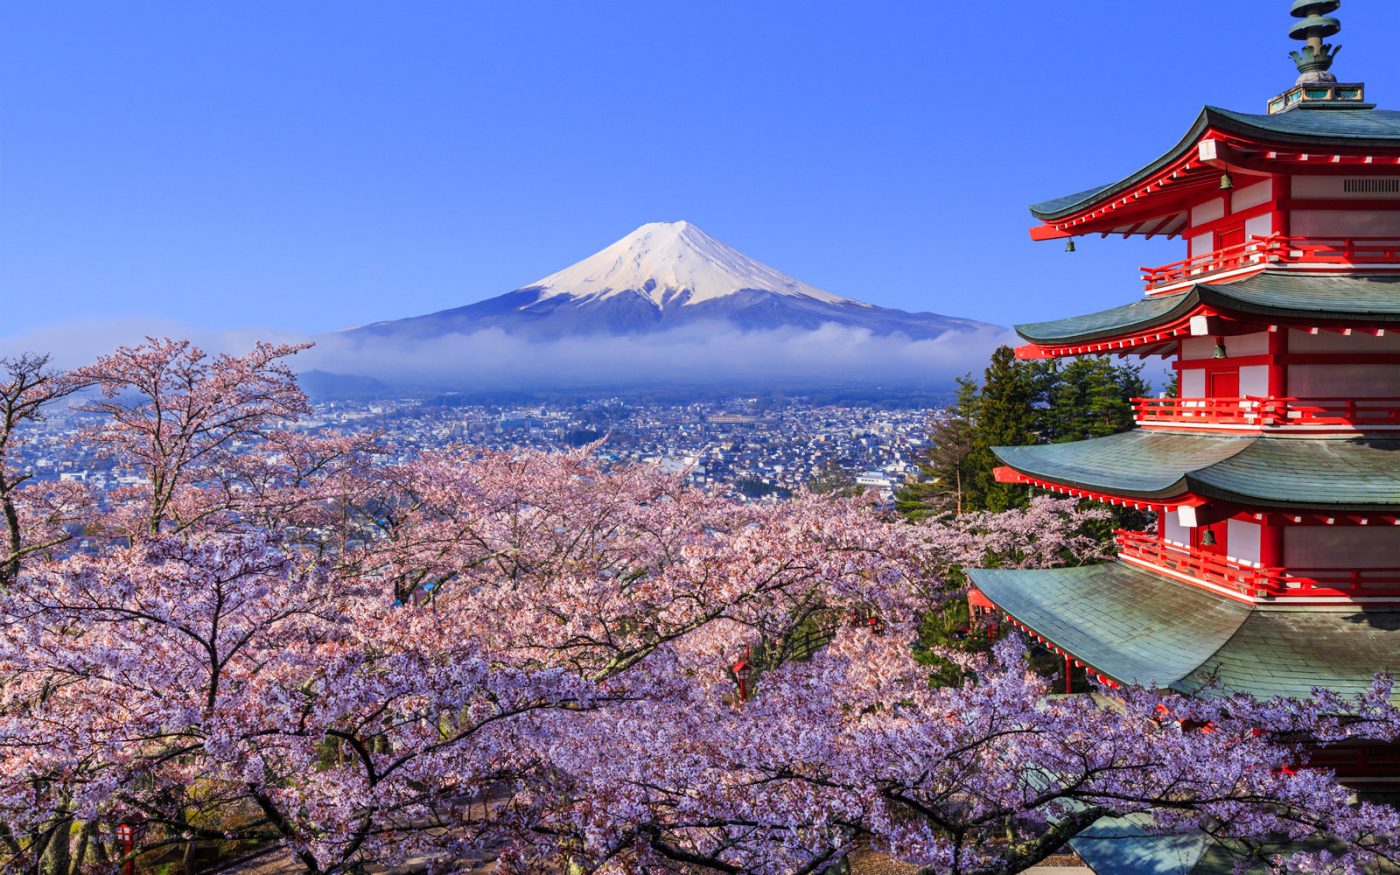 “Cazi de 7 ori și ridică-te de 8 ori” – Sfaturi minunate de la înțelepții japonezi care iți vor ușura viața